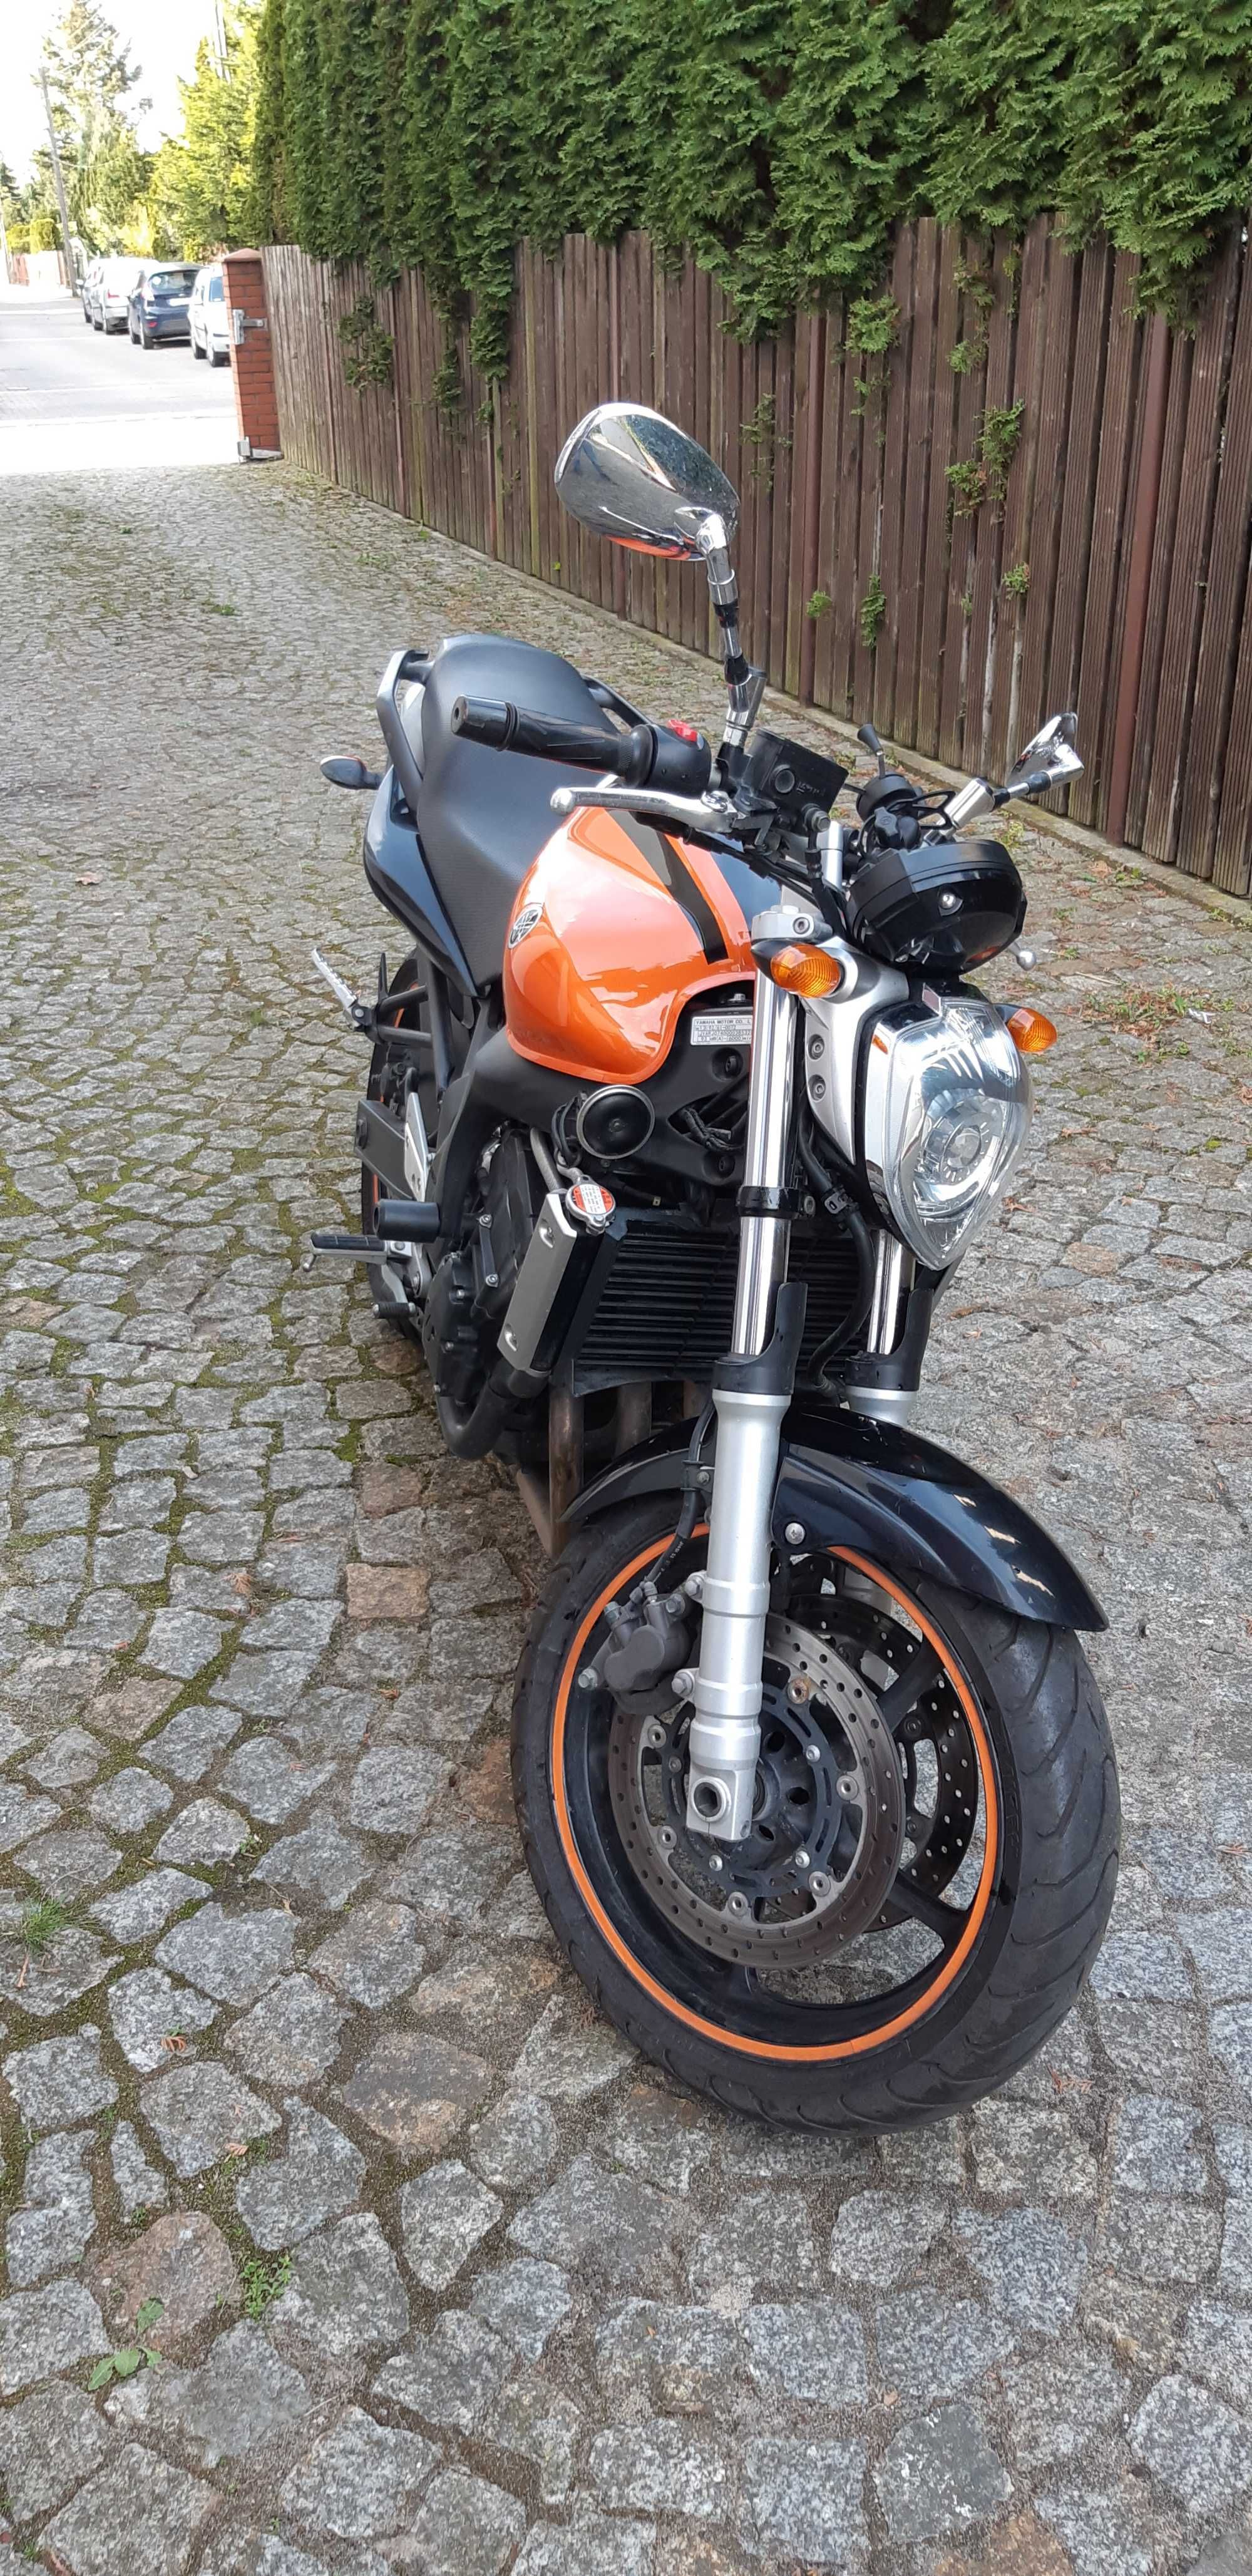 Motocykl Yamaha FZ6 naked, niski przebieg